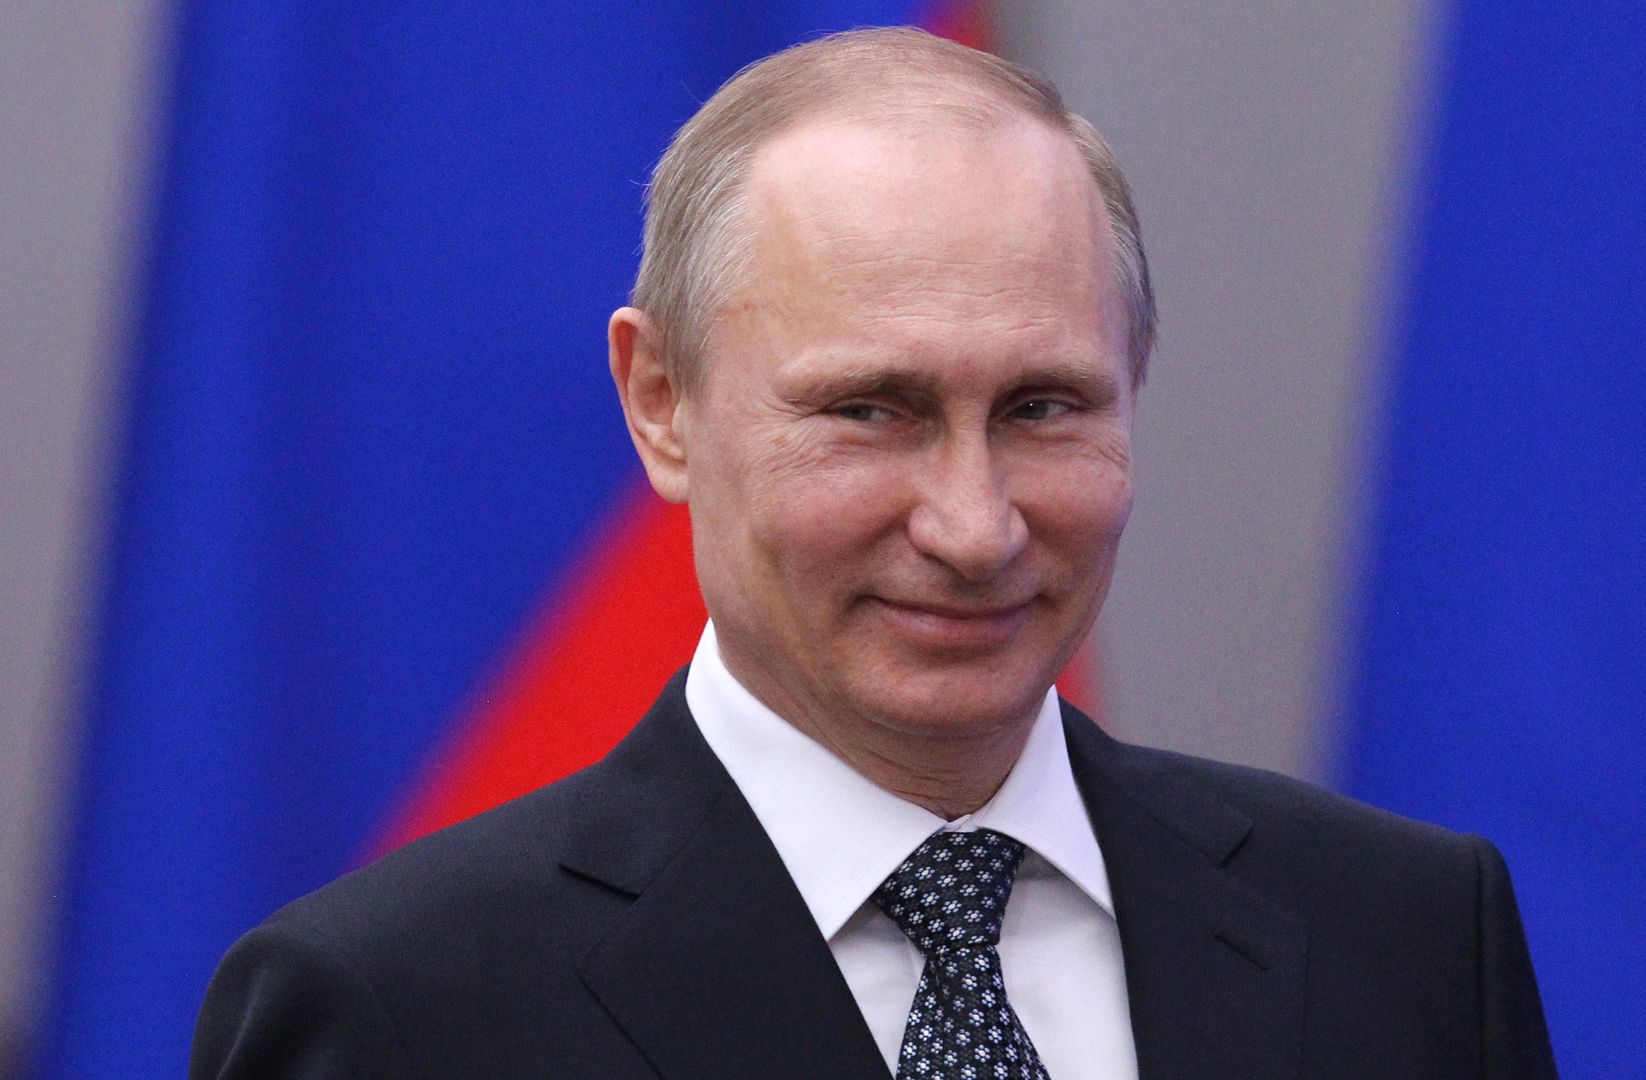 On zastąpi Władimira Putina? Zdjęcia podsyciły plotki